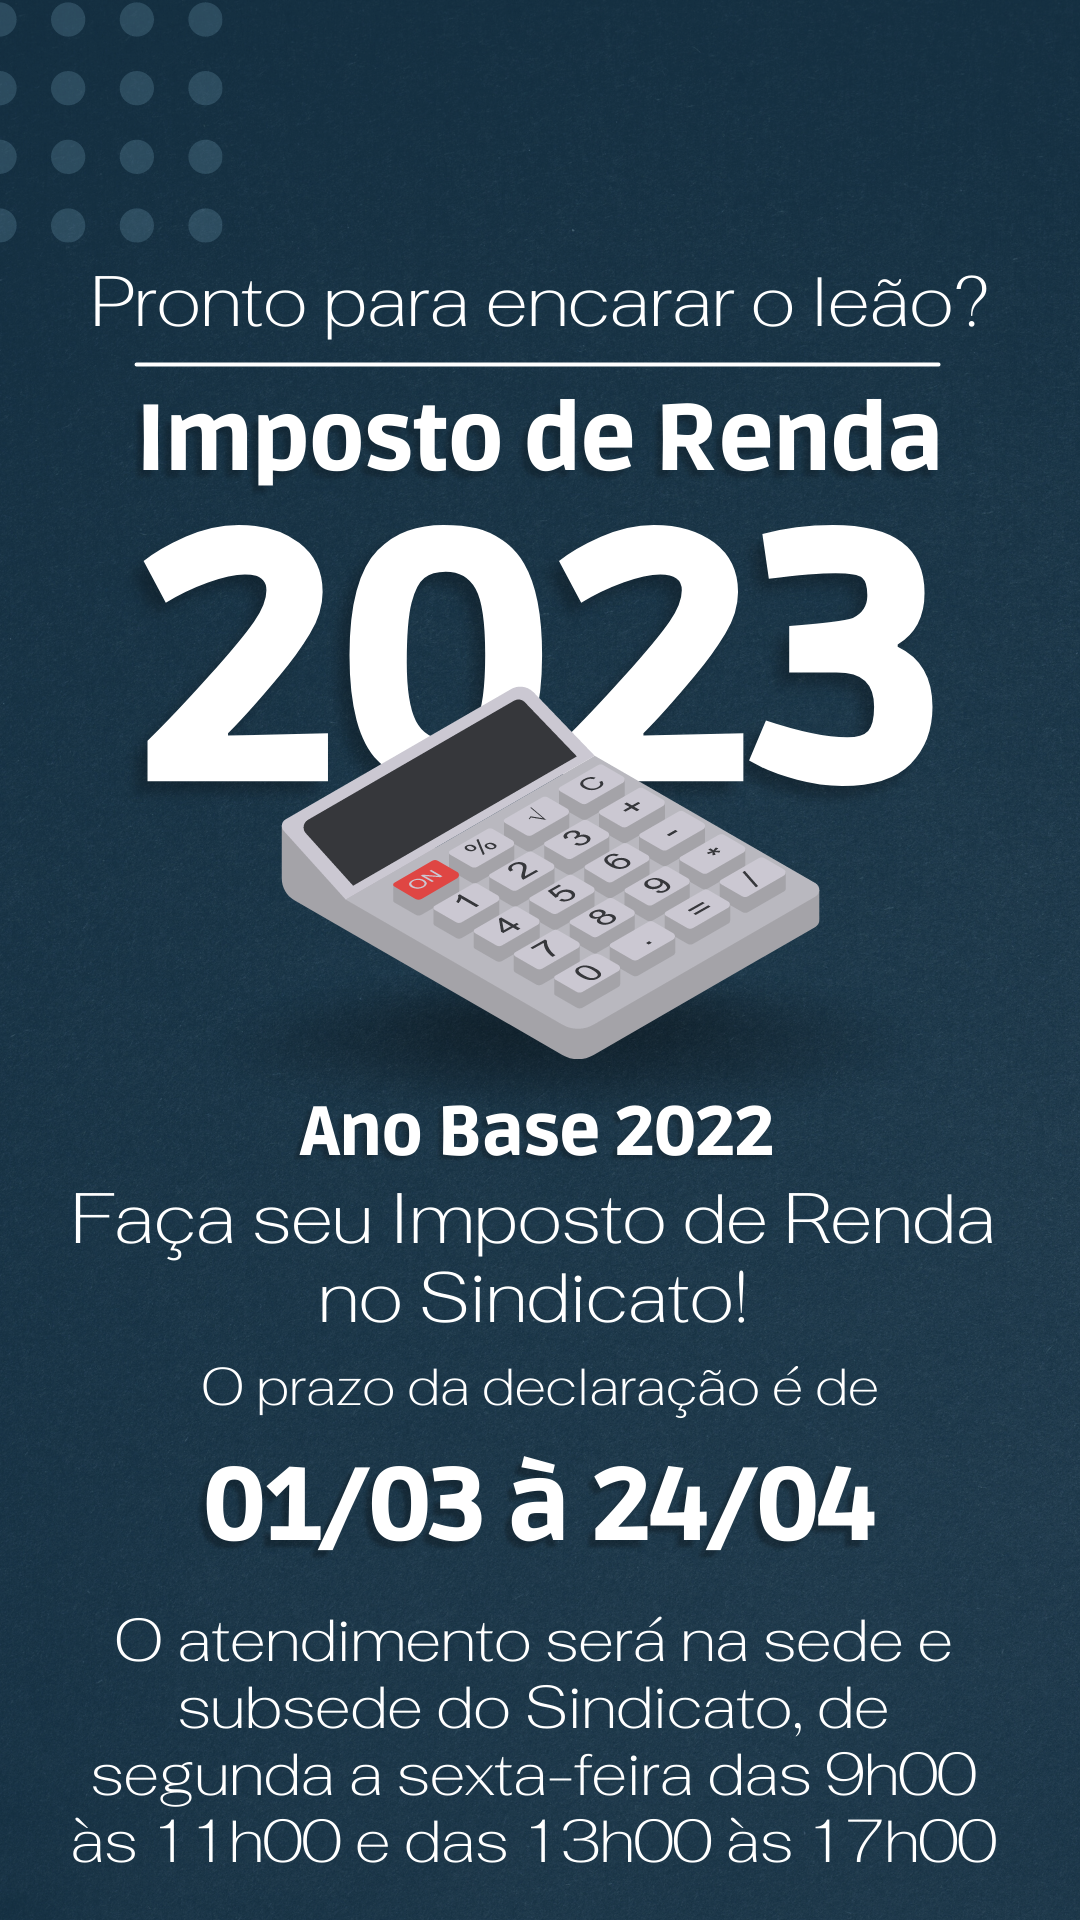 azul declaracao de imposto de renda 2022 story para instagram